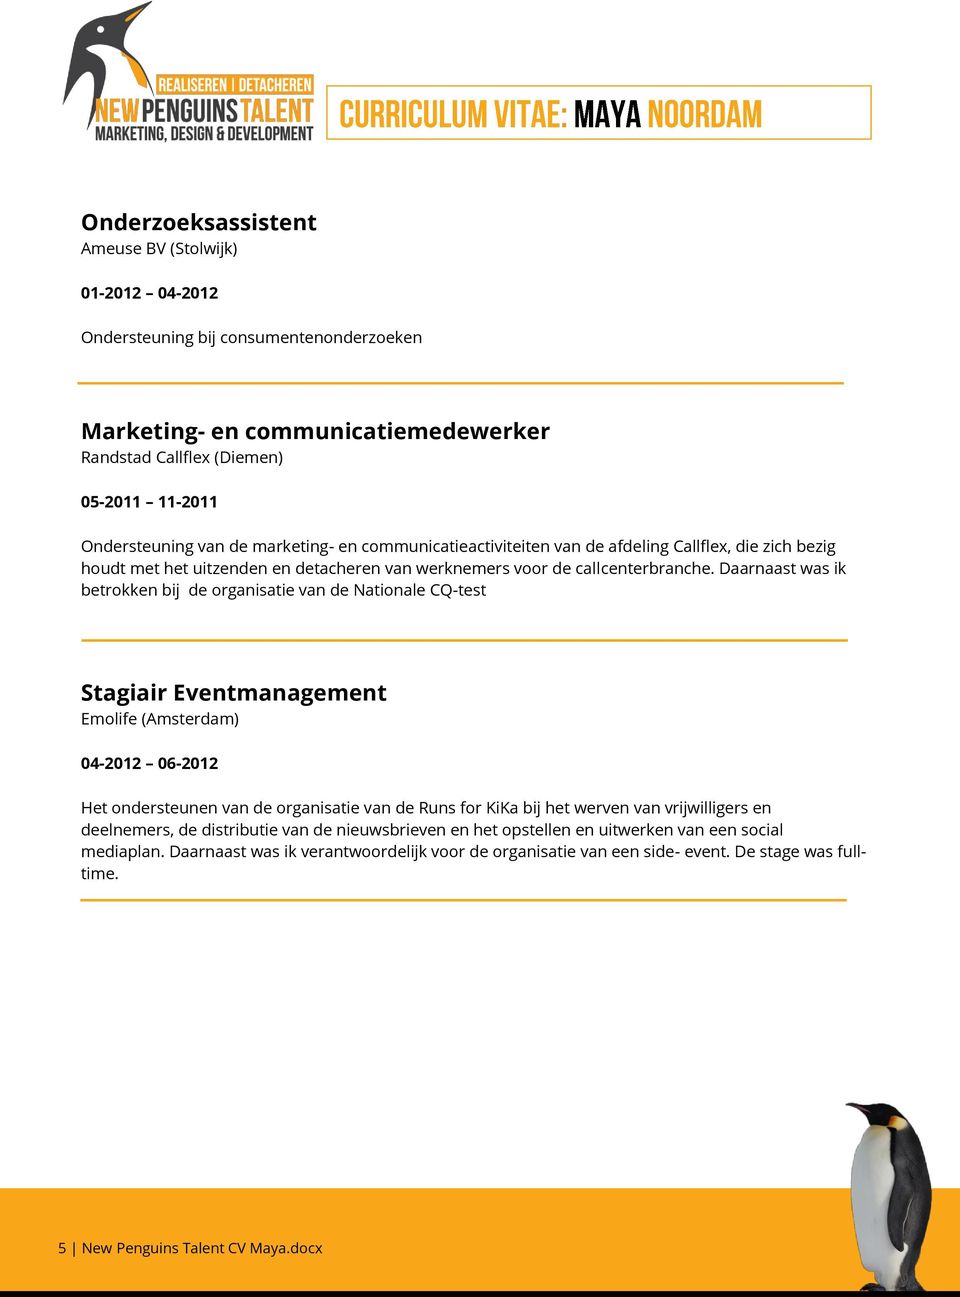 Daarnaast was ik betrokken bij de organisatie van de Nationale CQ-test Stagiair Eventmanagement Emolife (Amsterdam) 04-2012 06-2012 Het ondersteunen van de organisatie van de Runs for KiKa bij het